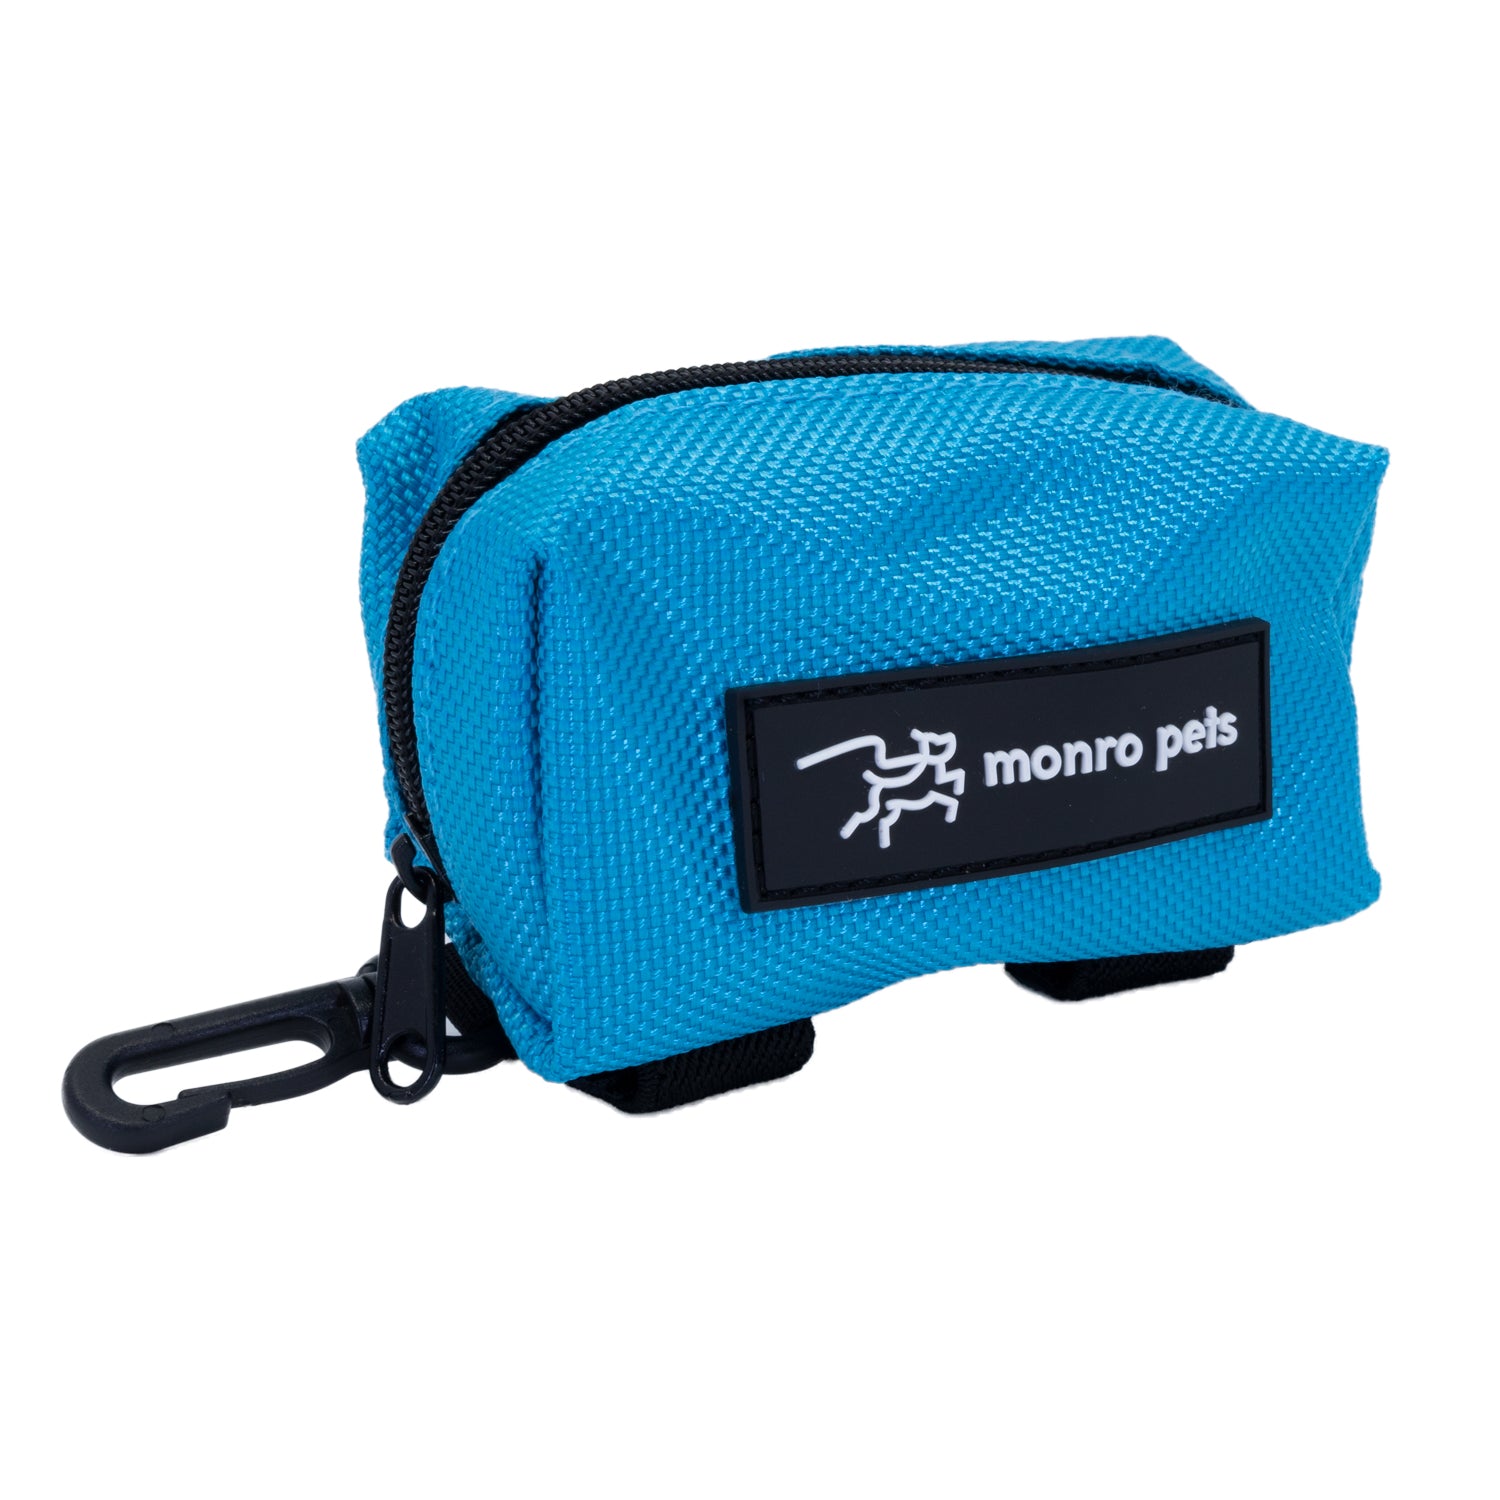 dog-bag-carrier-poop-bag-holder-carolina-blue